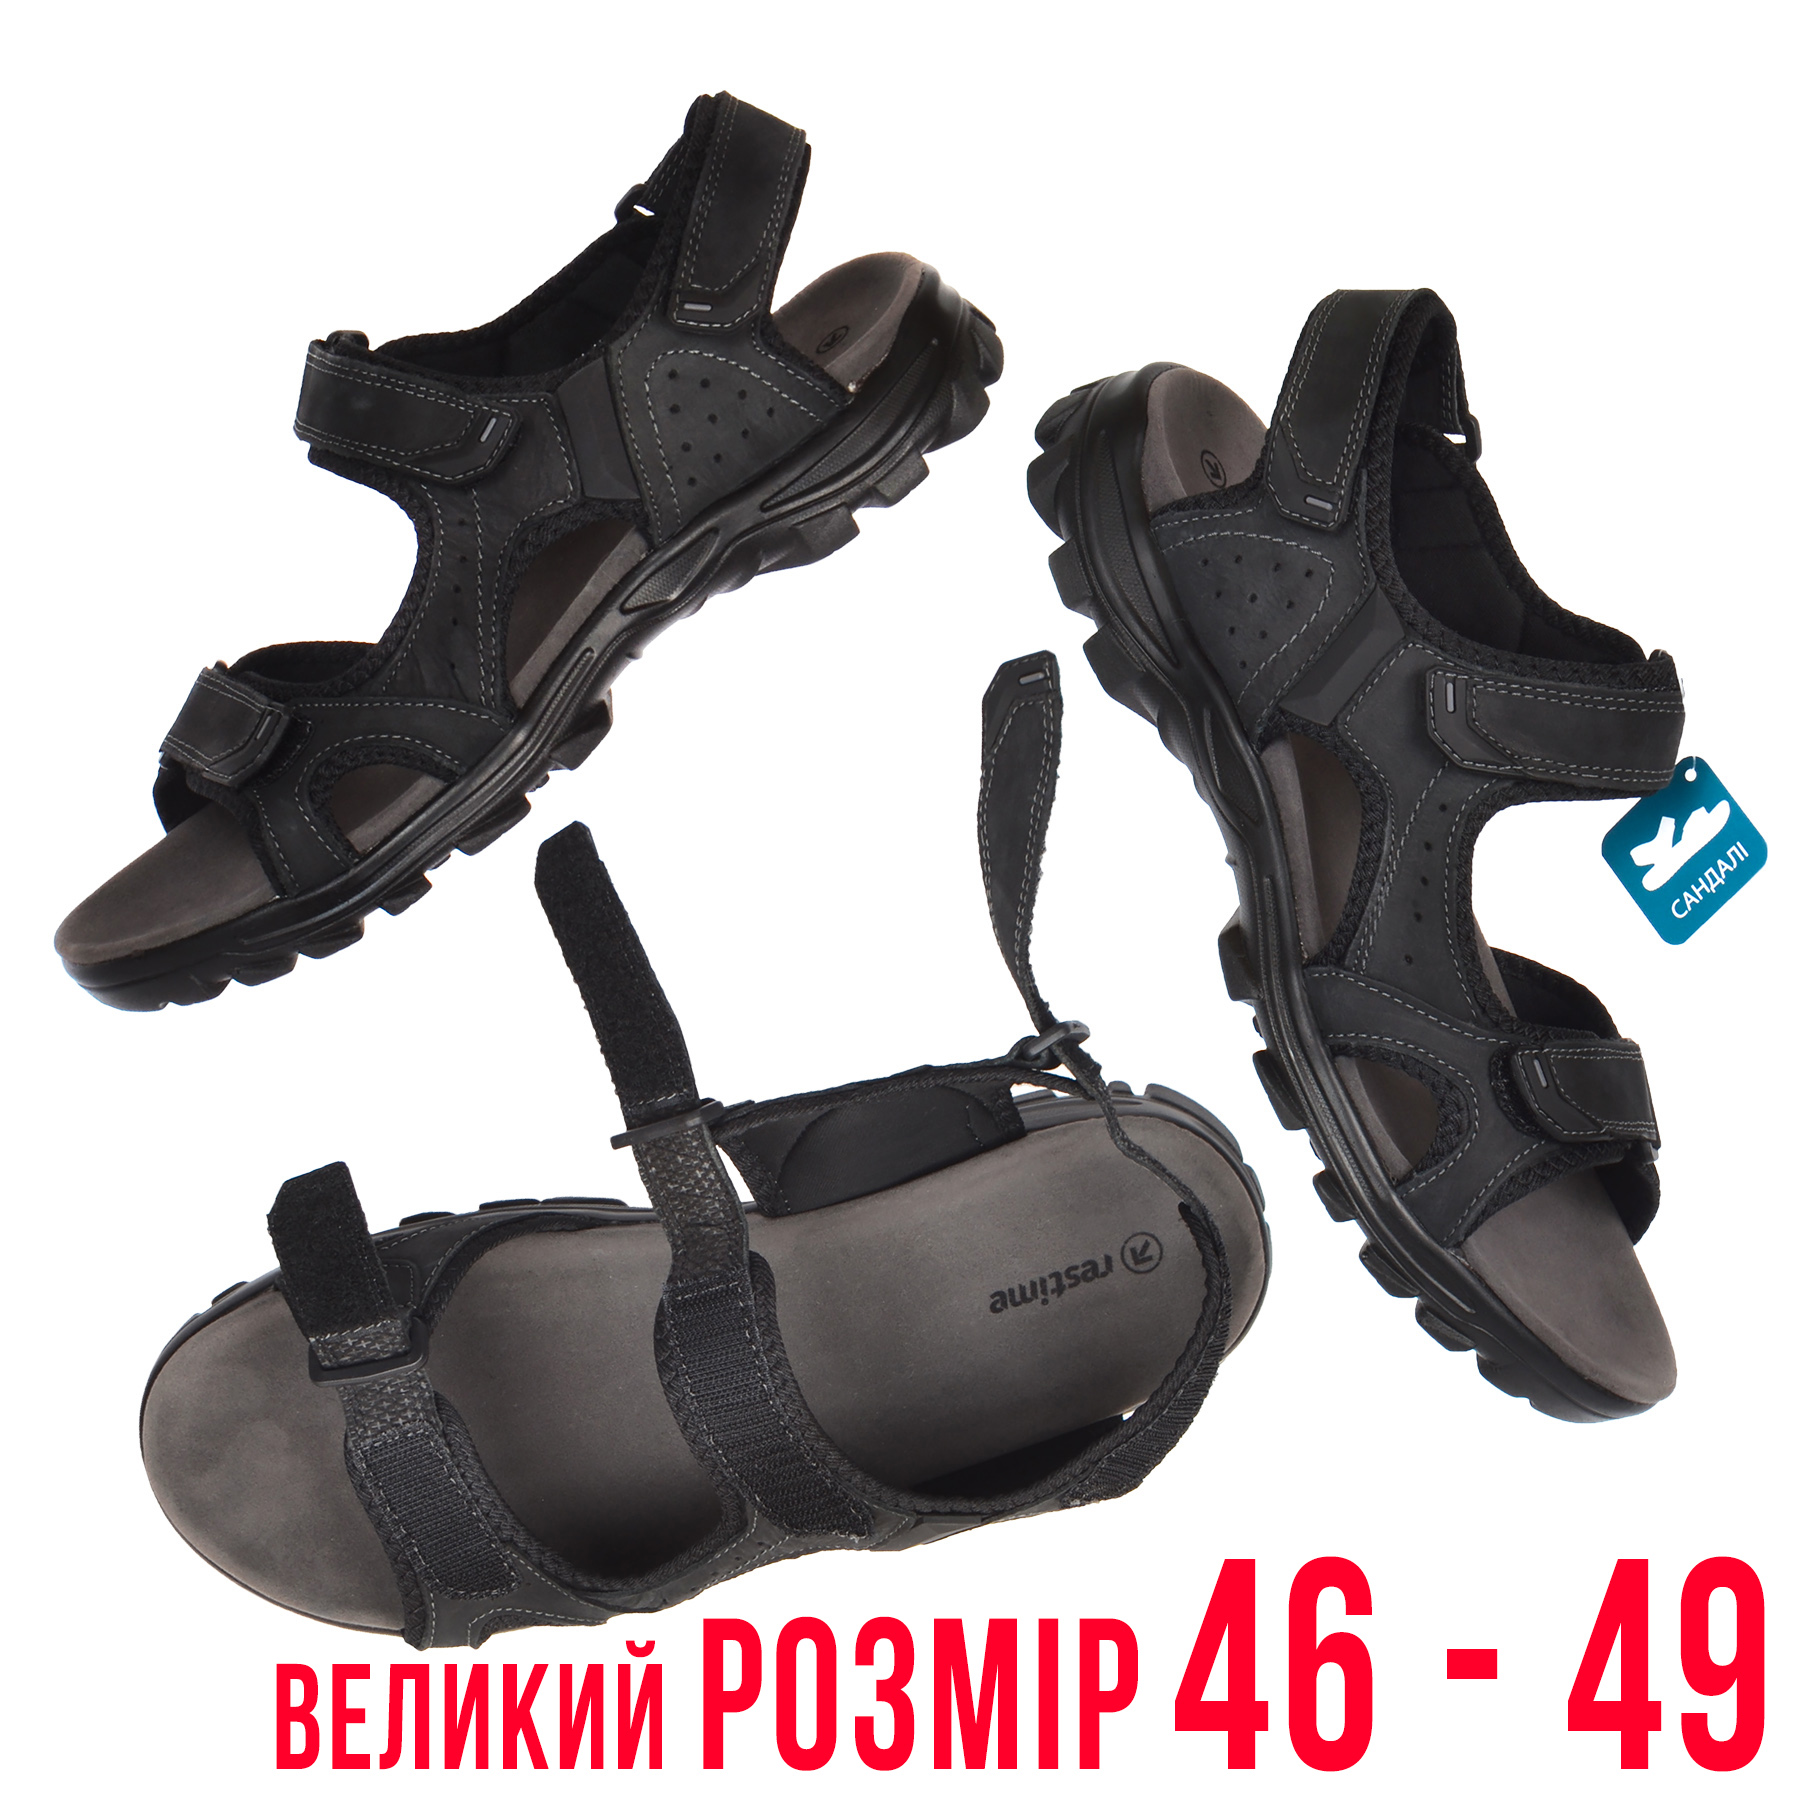 Сандалии мужские кожаные большого размера 46 - 49. Цвет черный, регулировка длины и полноты купить в Украине интернет-магазин обуви Nanogu